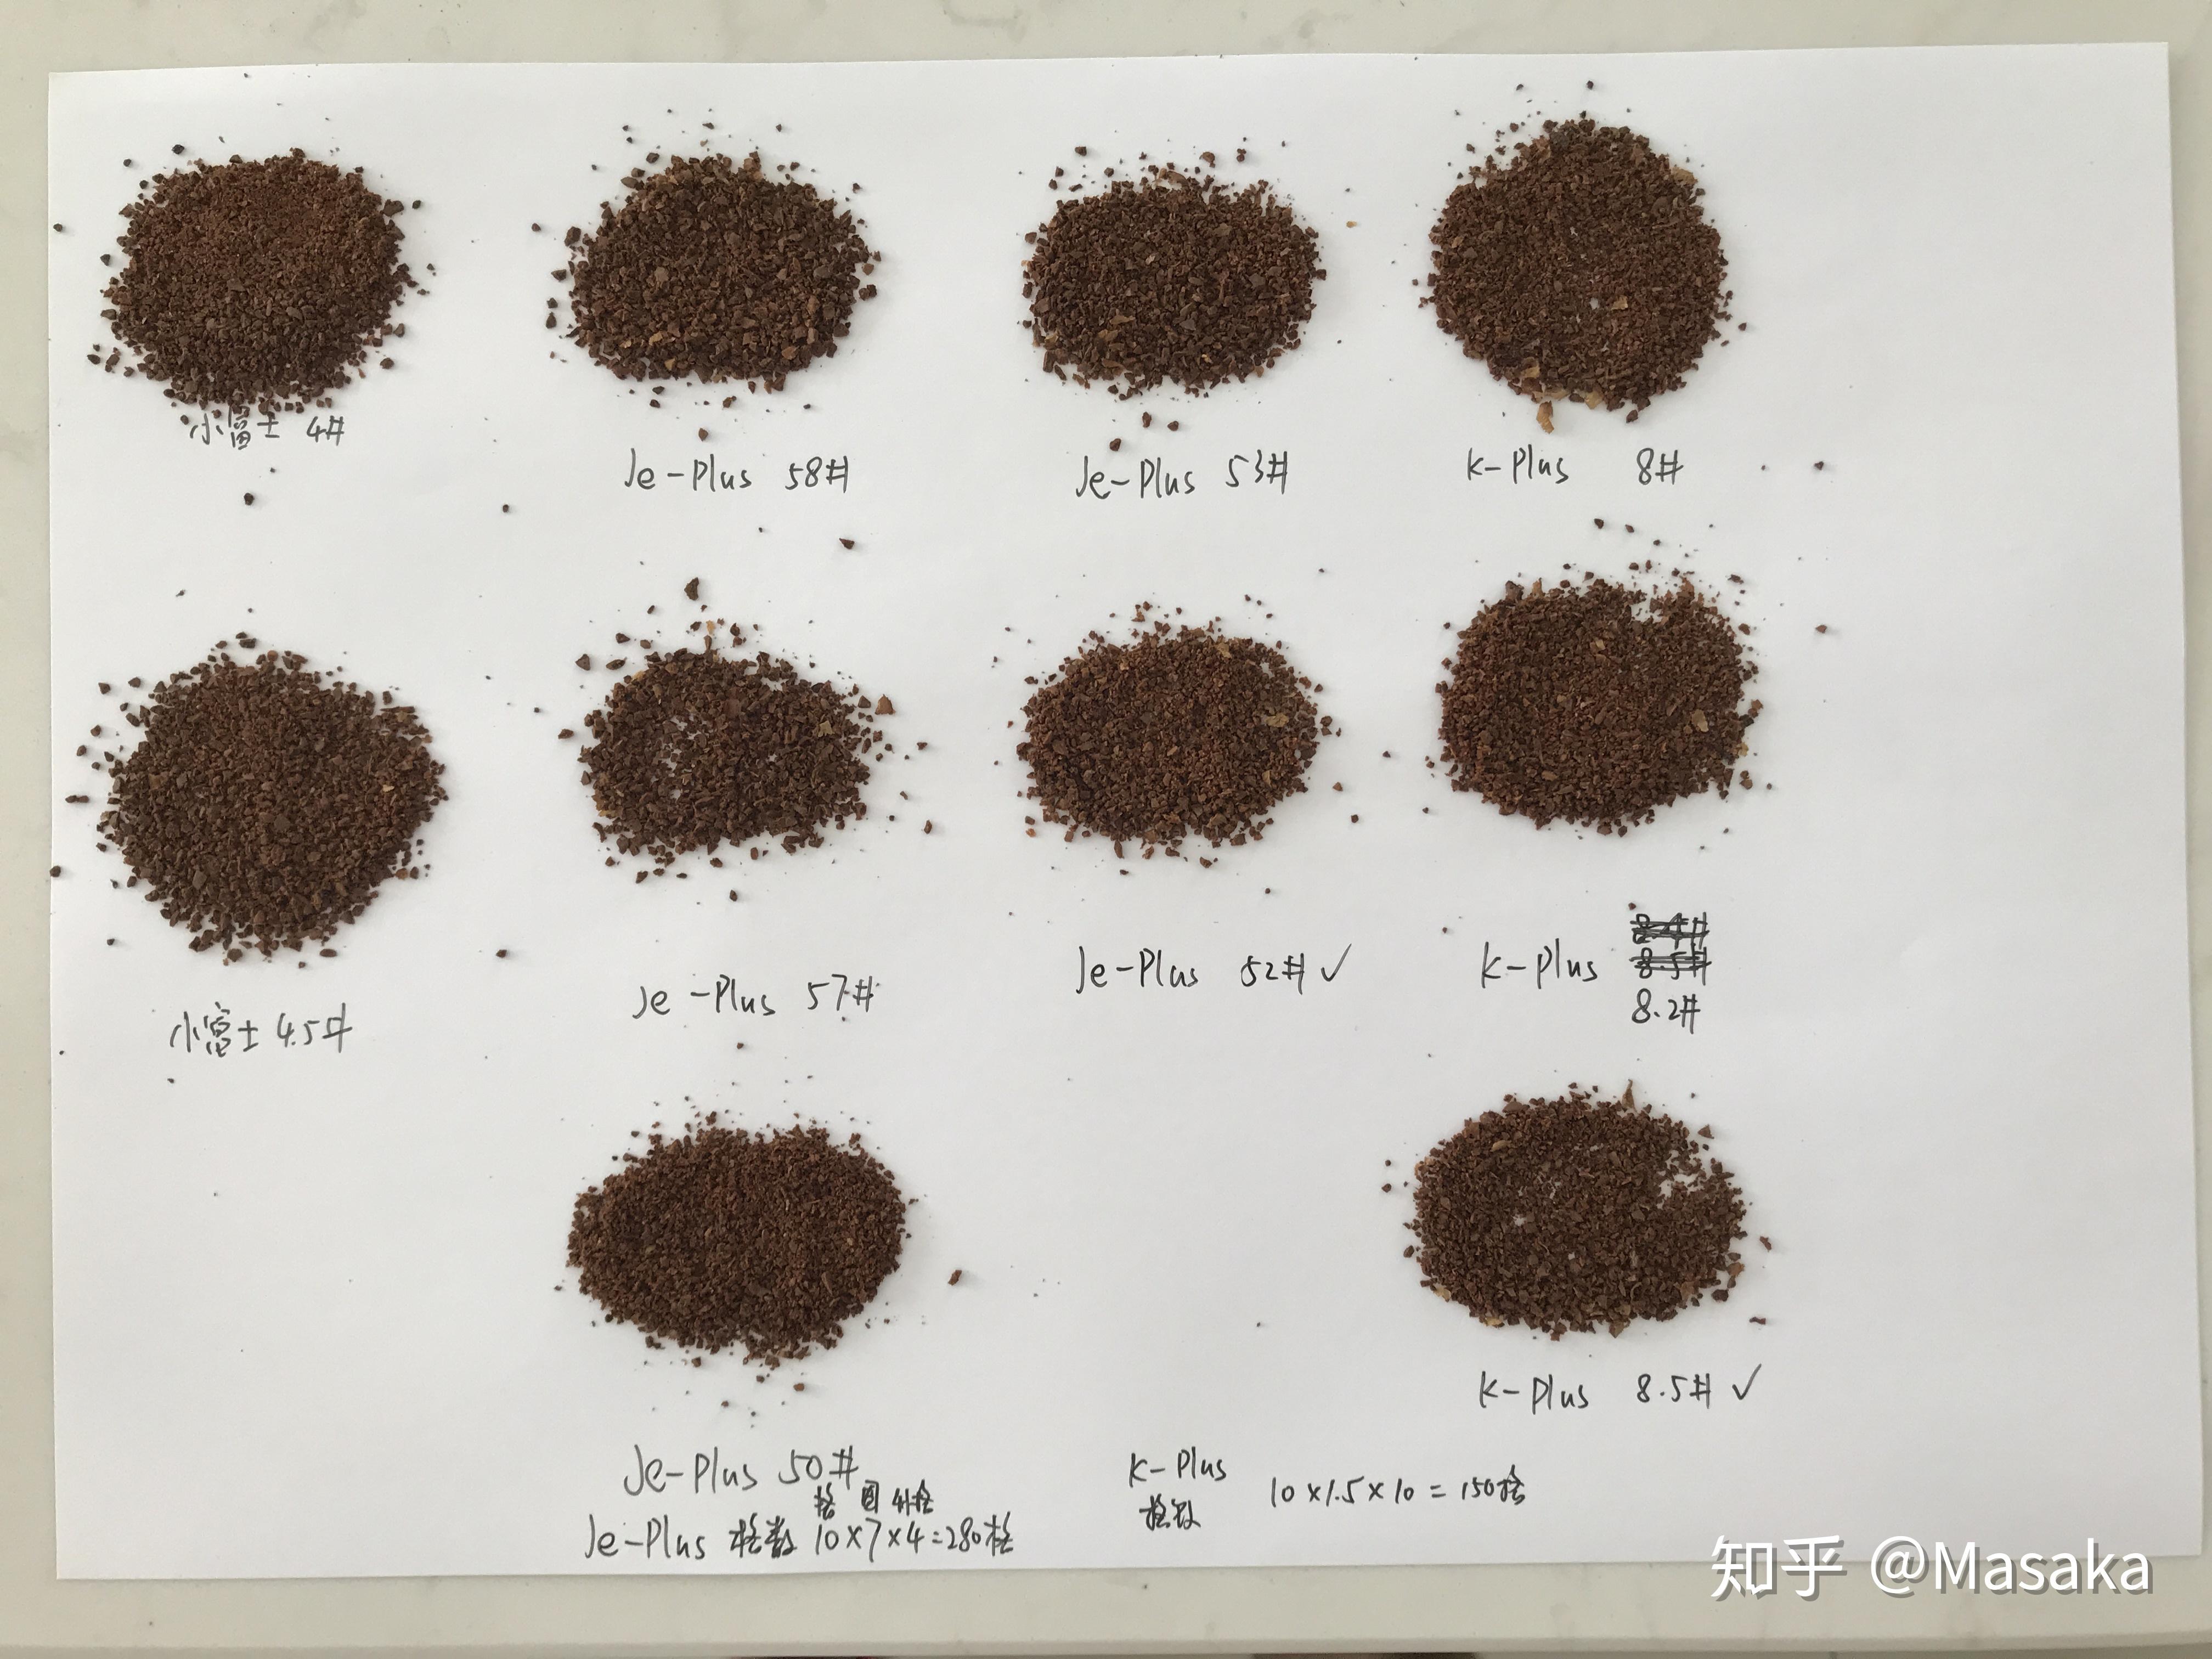 磨咖啡粉的粗细图解图片